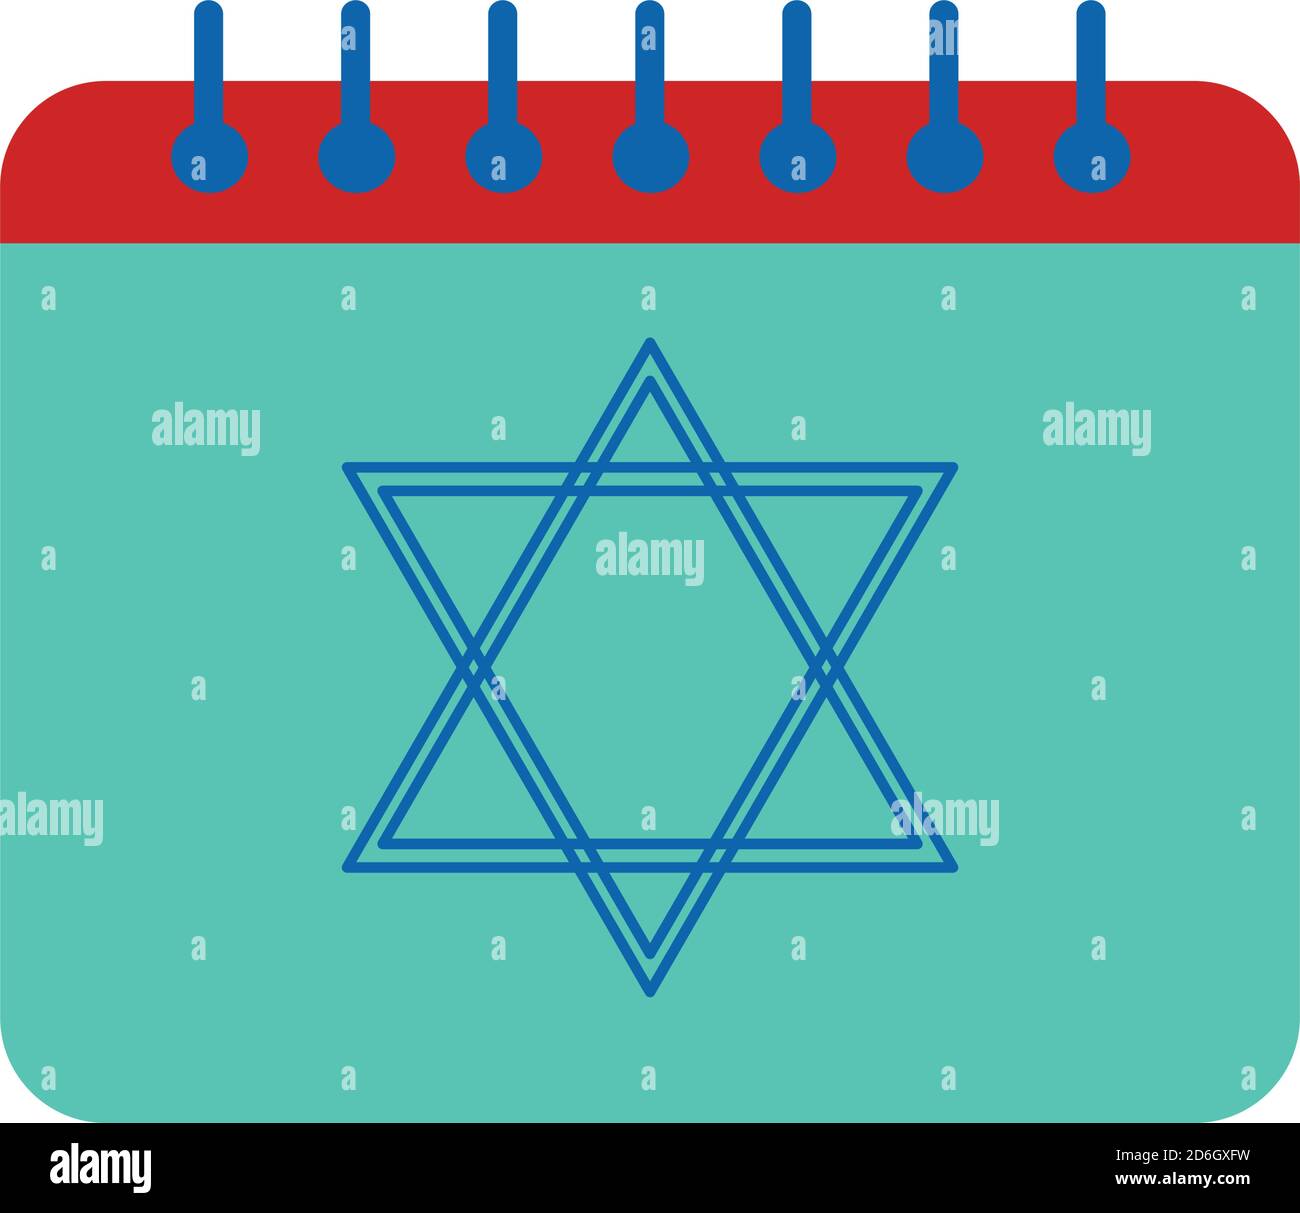 Judaic calendar Stock Vector Images Alamy